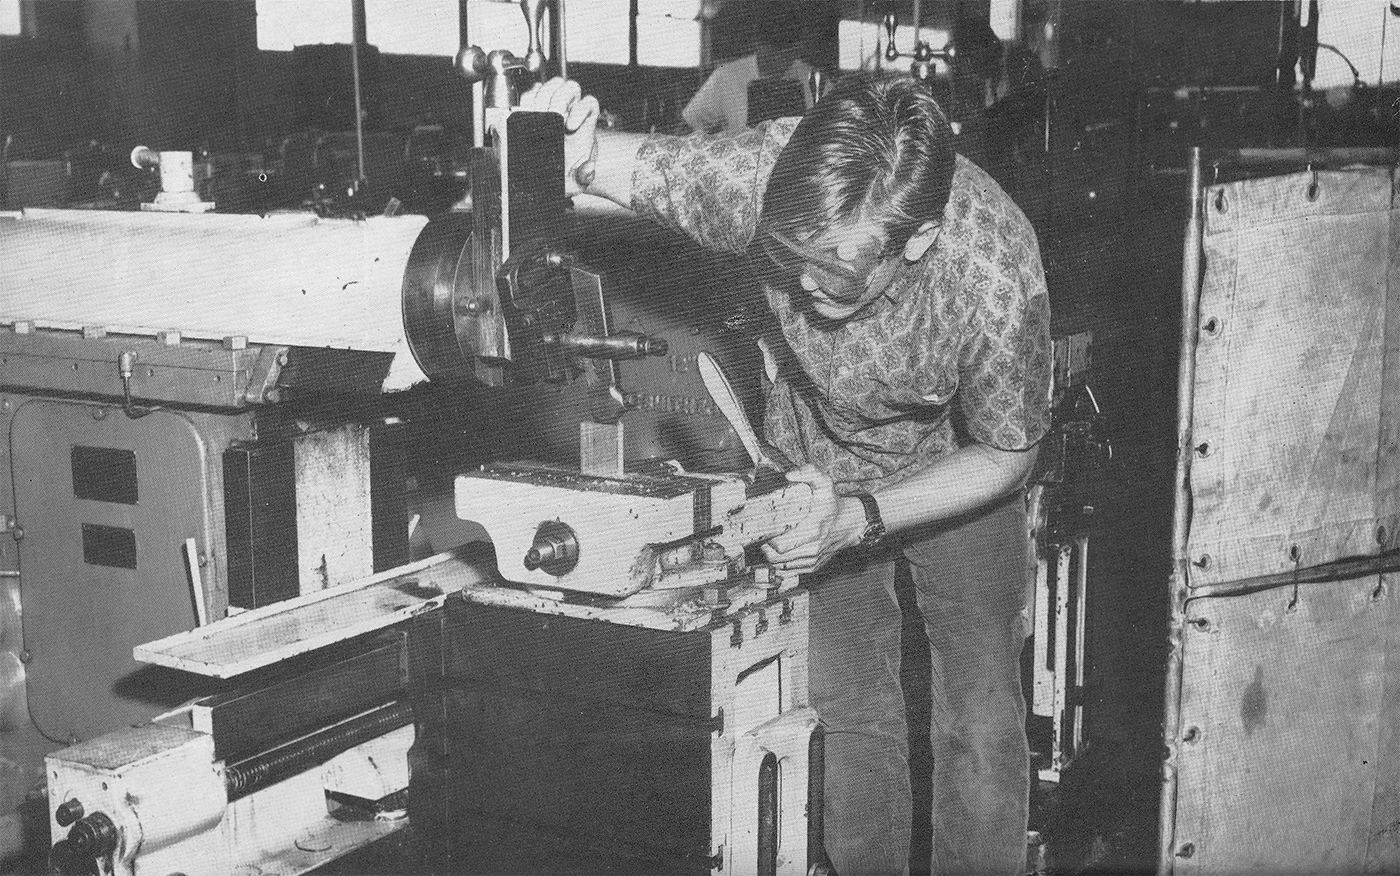 The machine shop in 1963